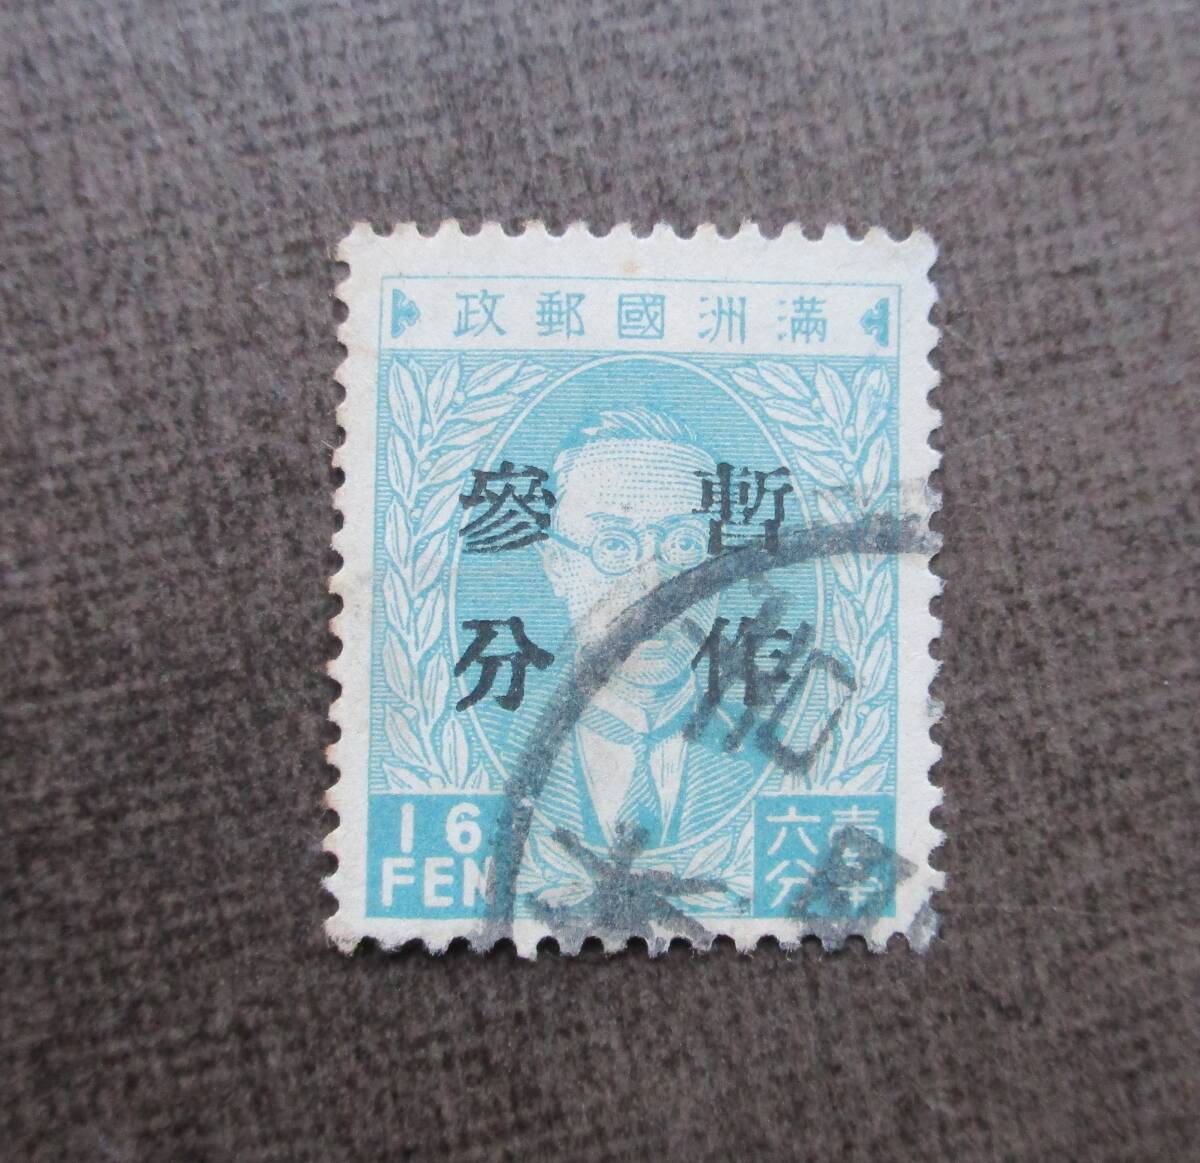 満州切手   さくらカタログ＃39  3f on 16f  使用済  中古品の画像1